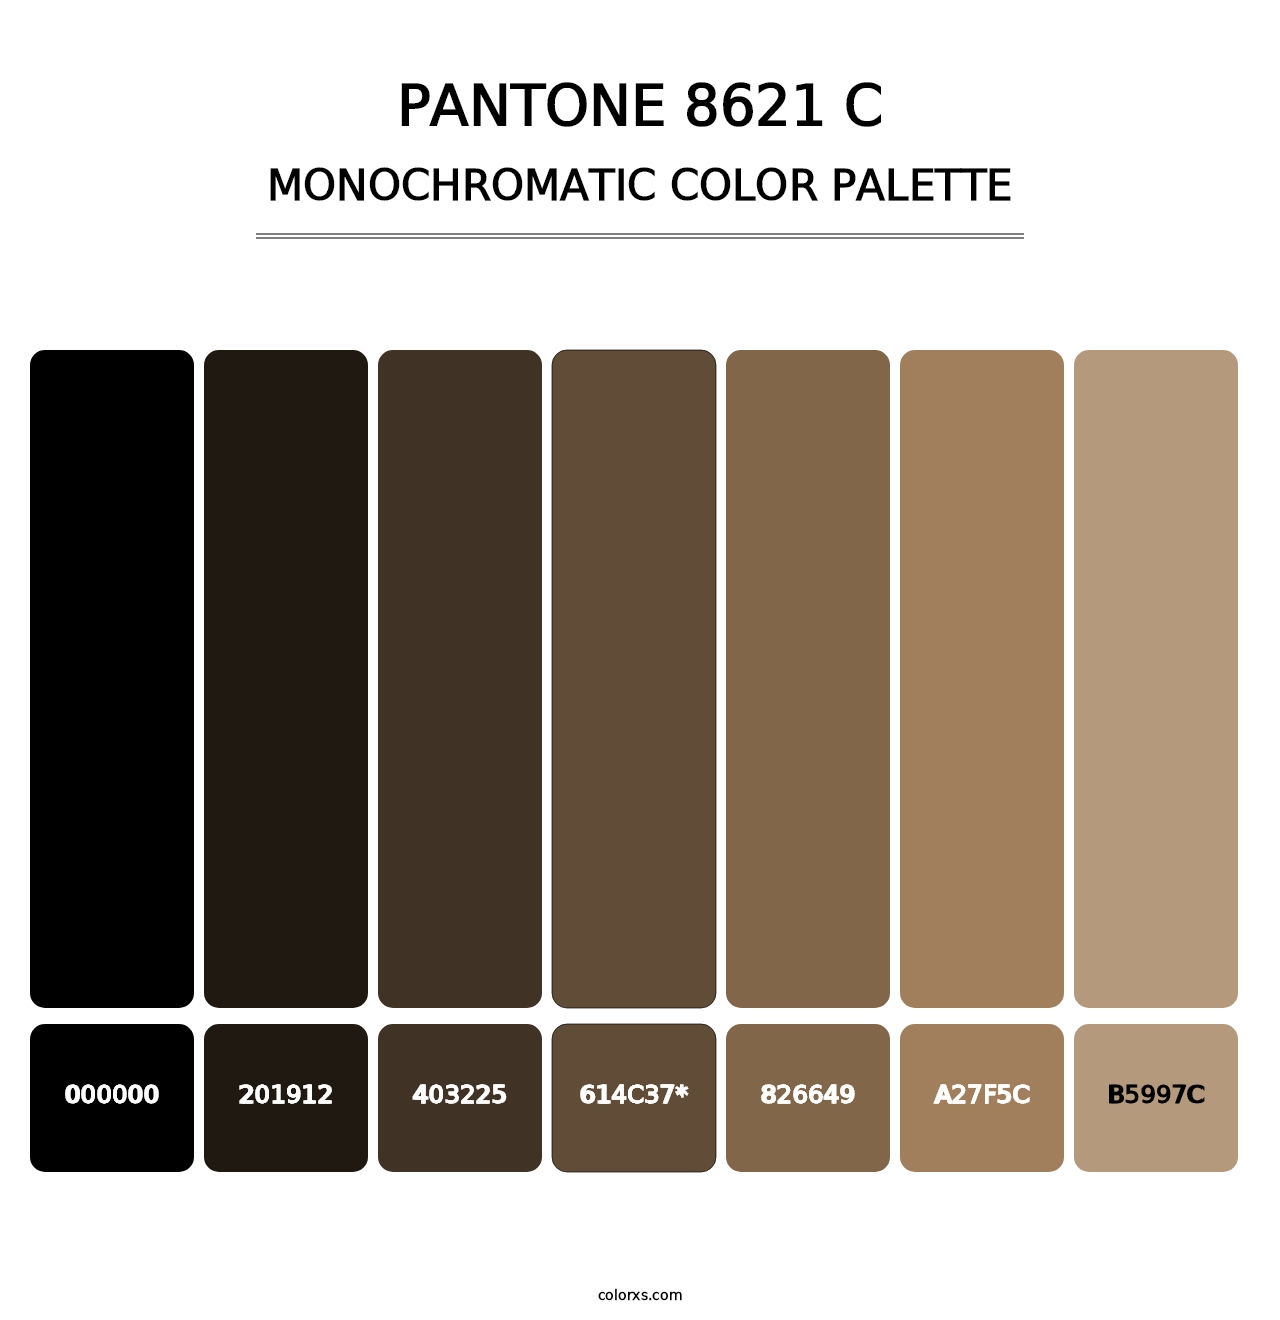 PANTONE 8621 C - Monochromatic Color Palette